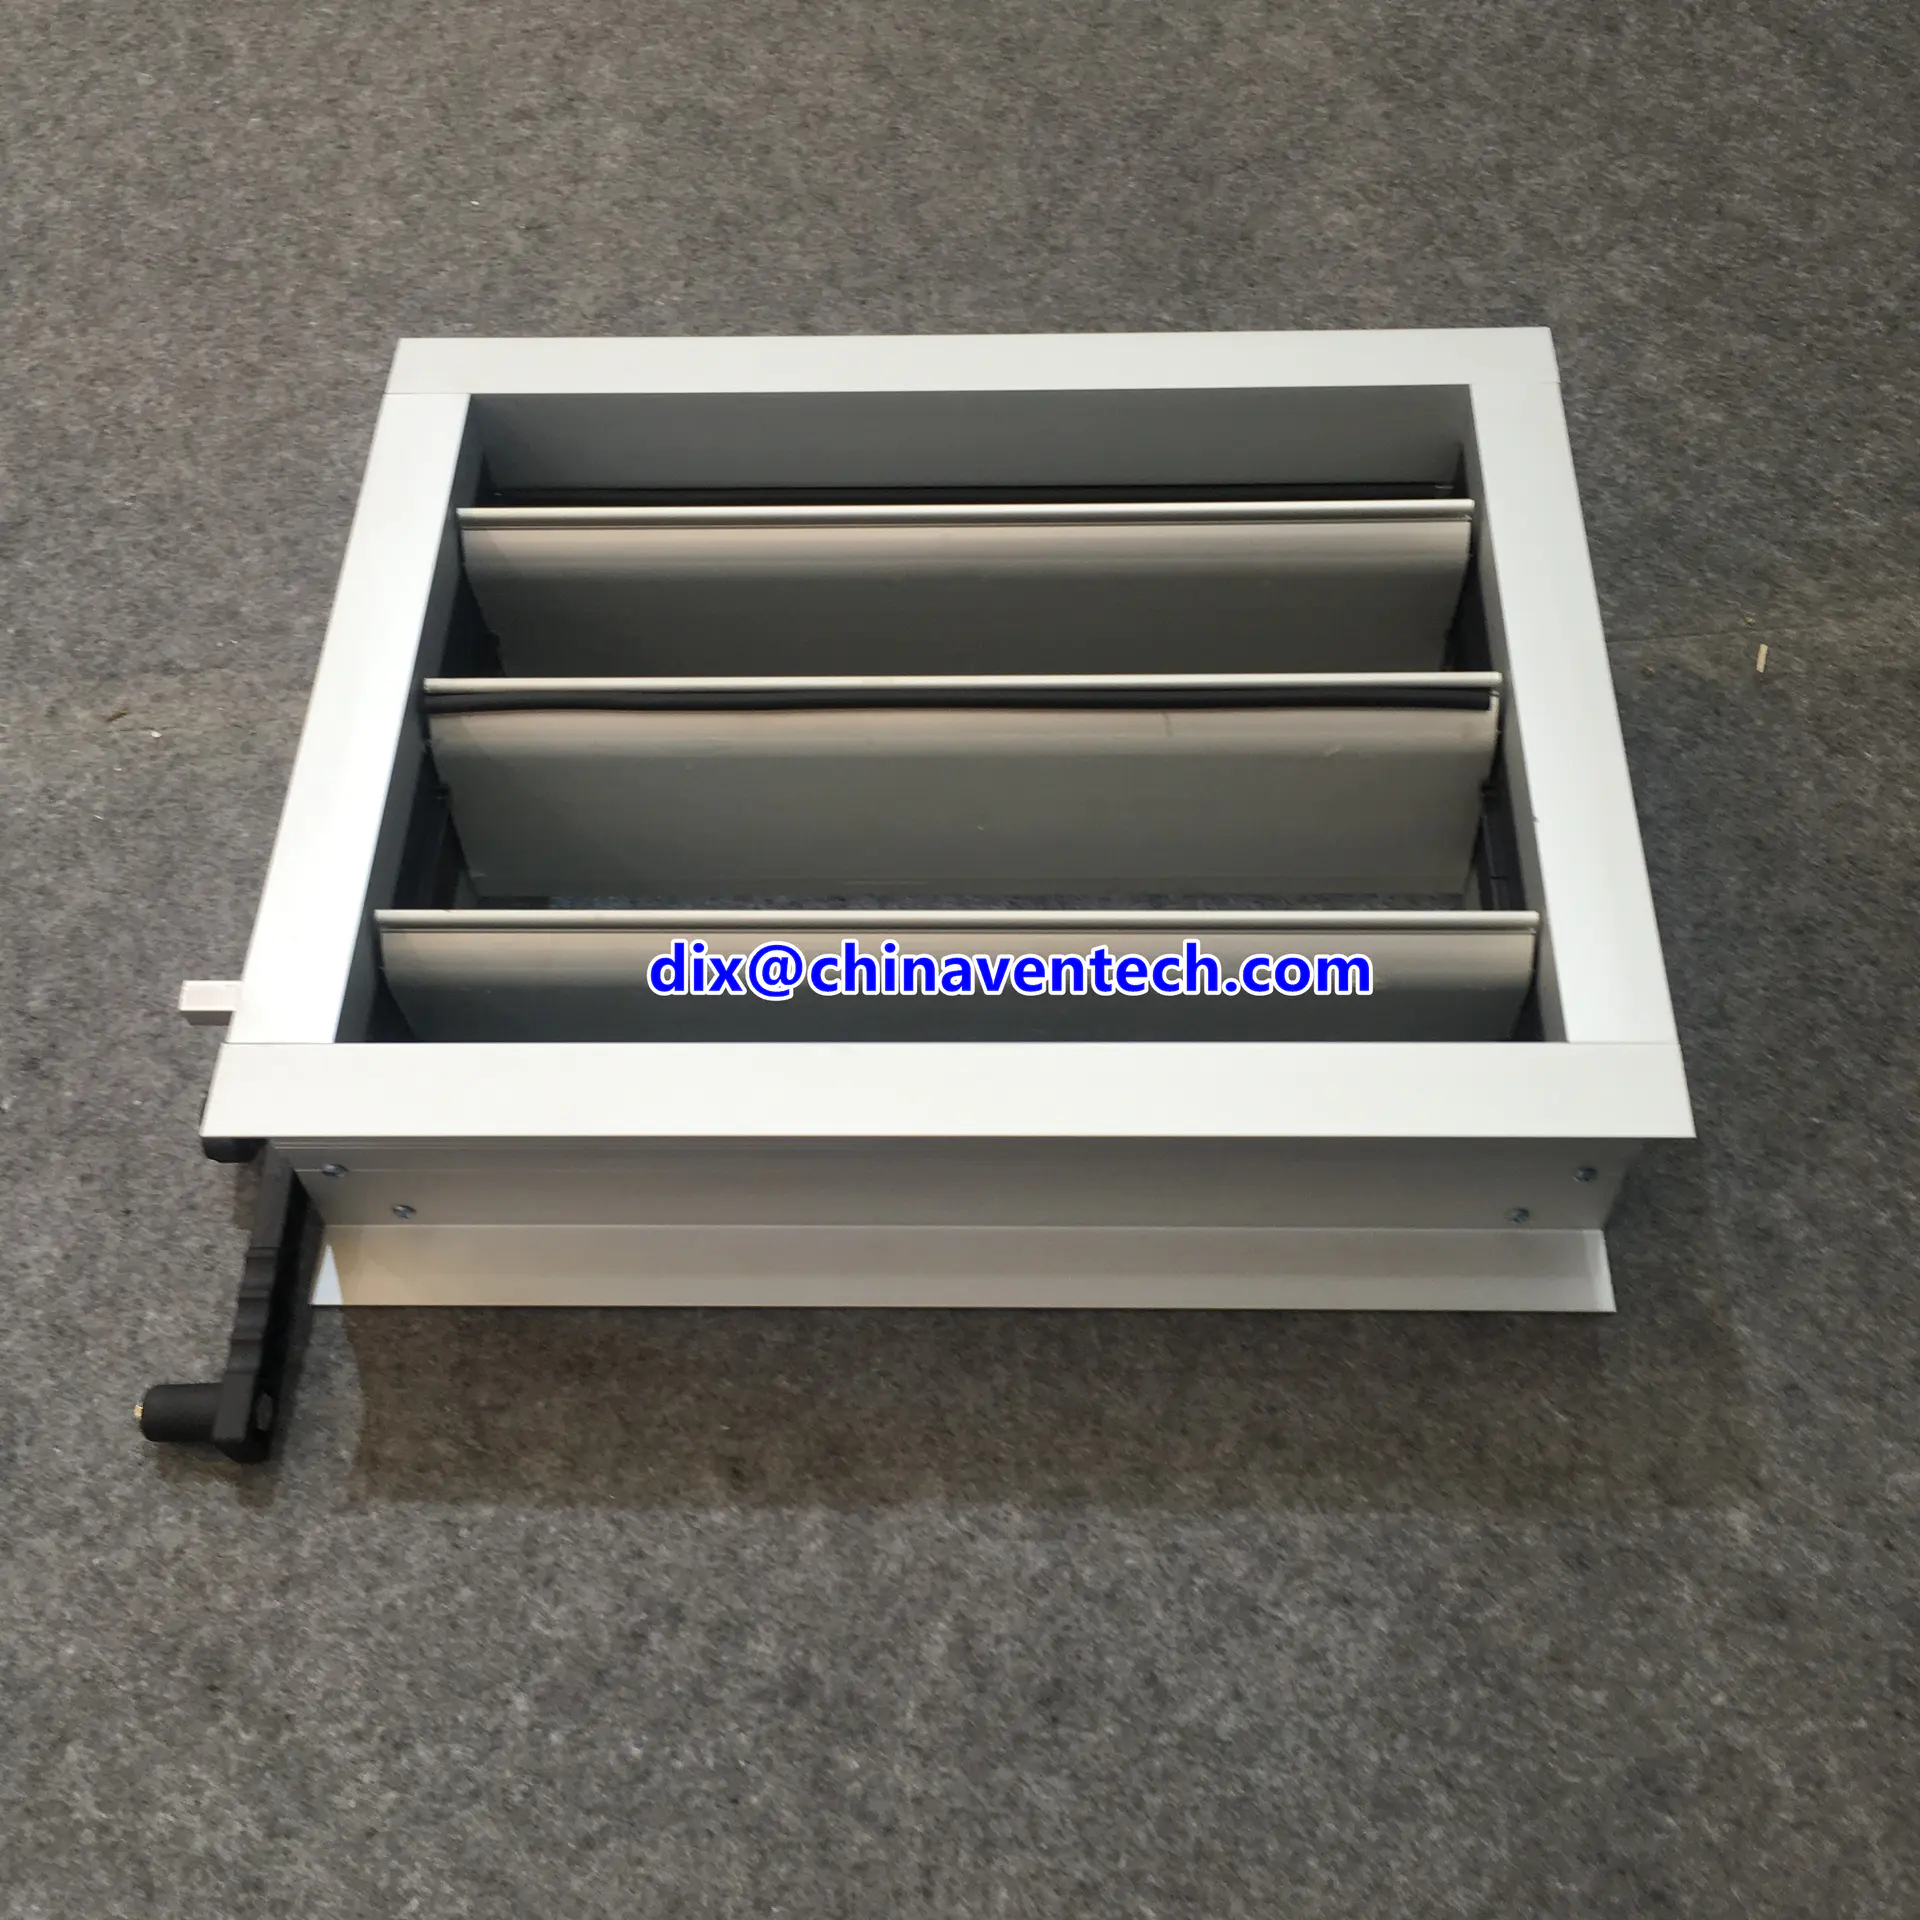 HVAC Duct Ventilation Aluminium Adjutable Blades Air Volume Control Damper